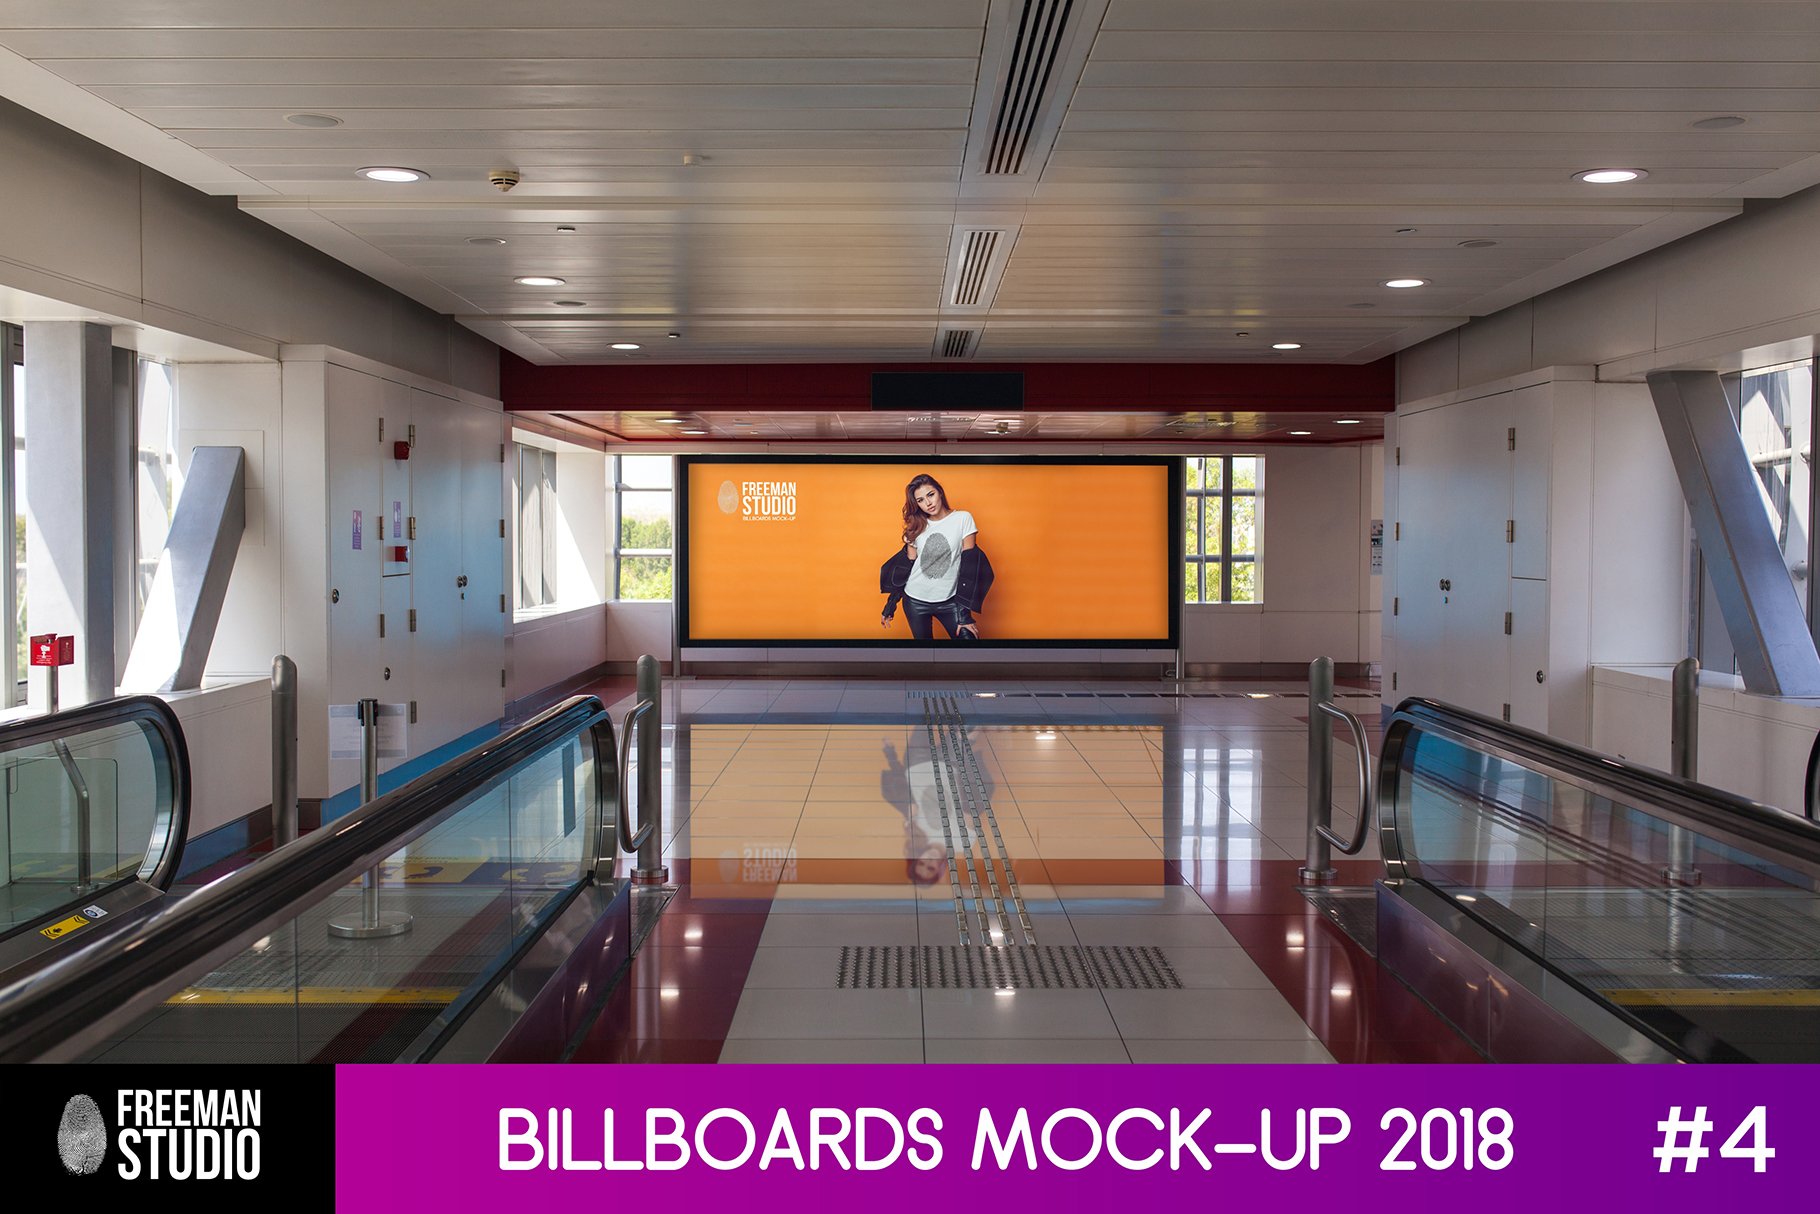 Billboards Mock-Up 2018 #4 cover image.